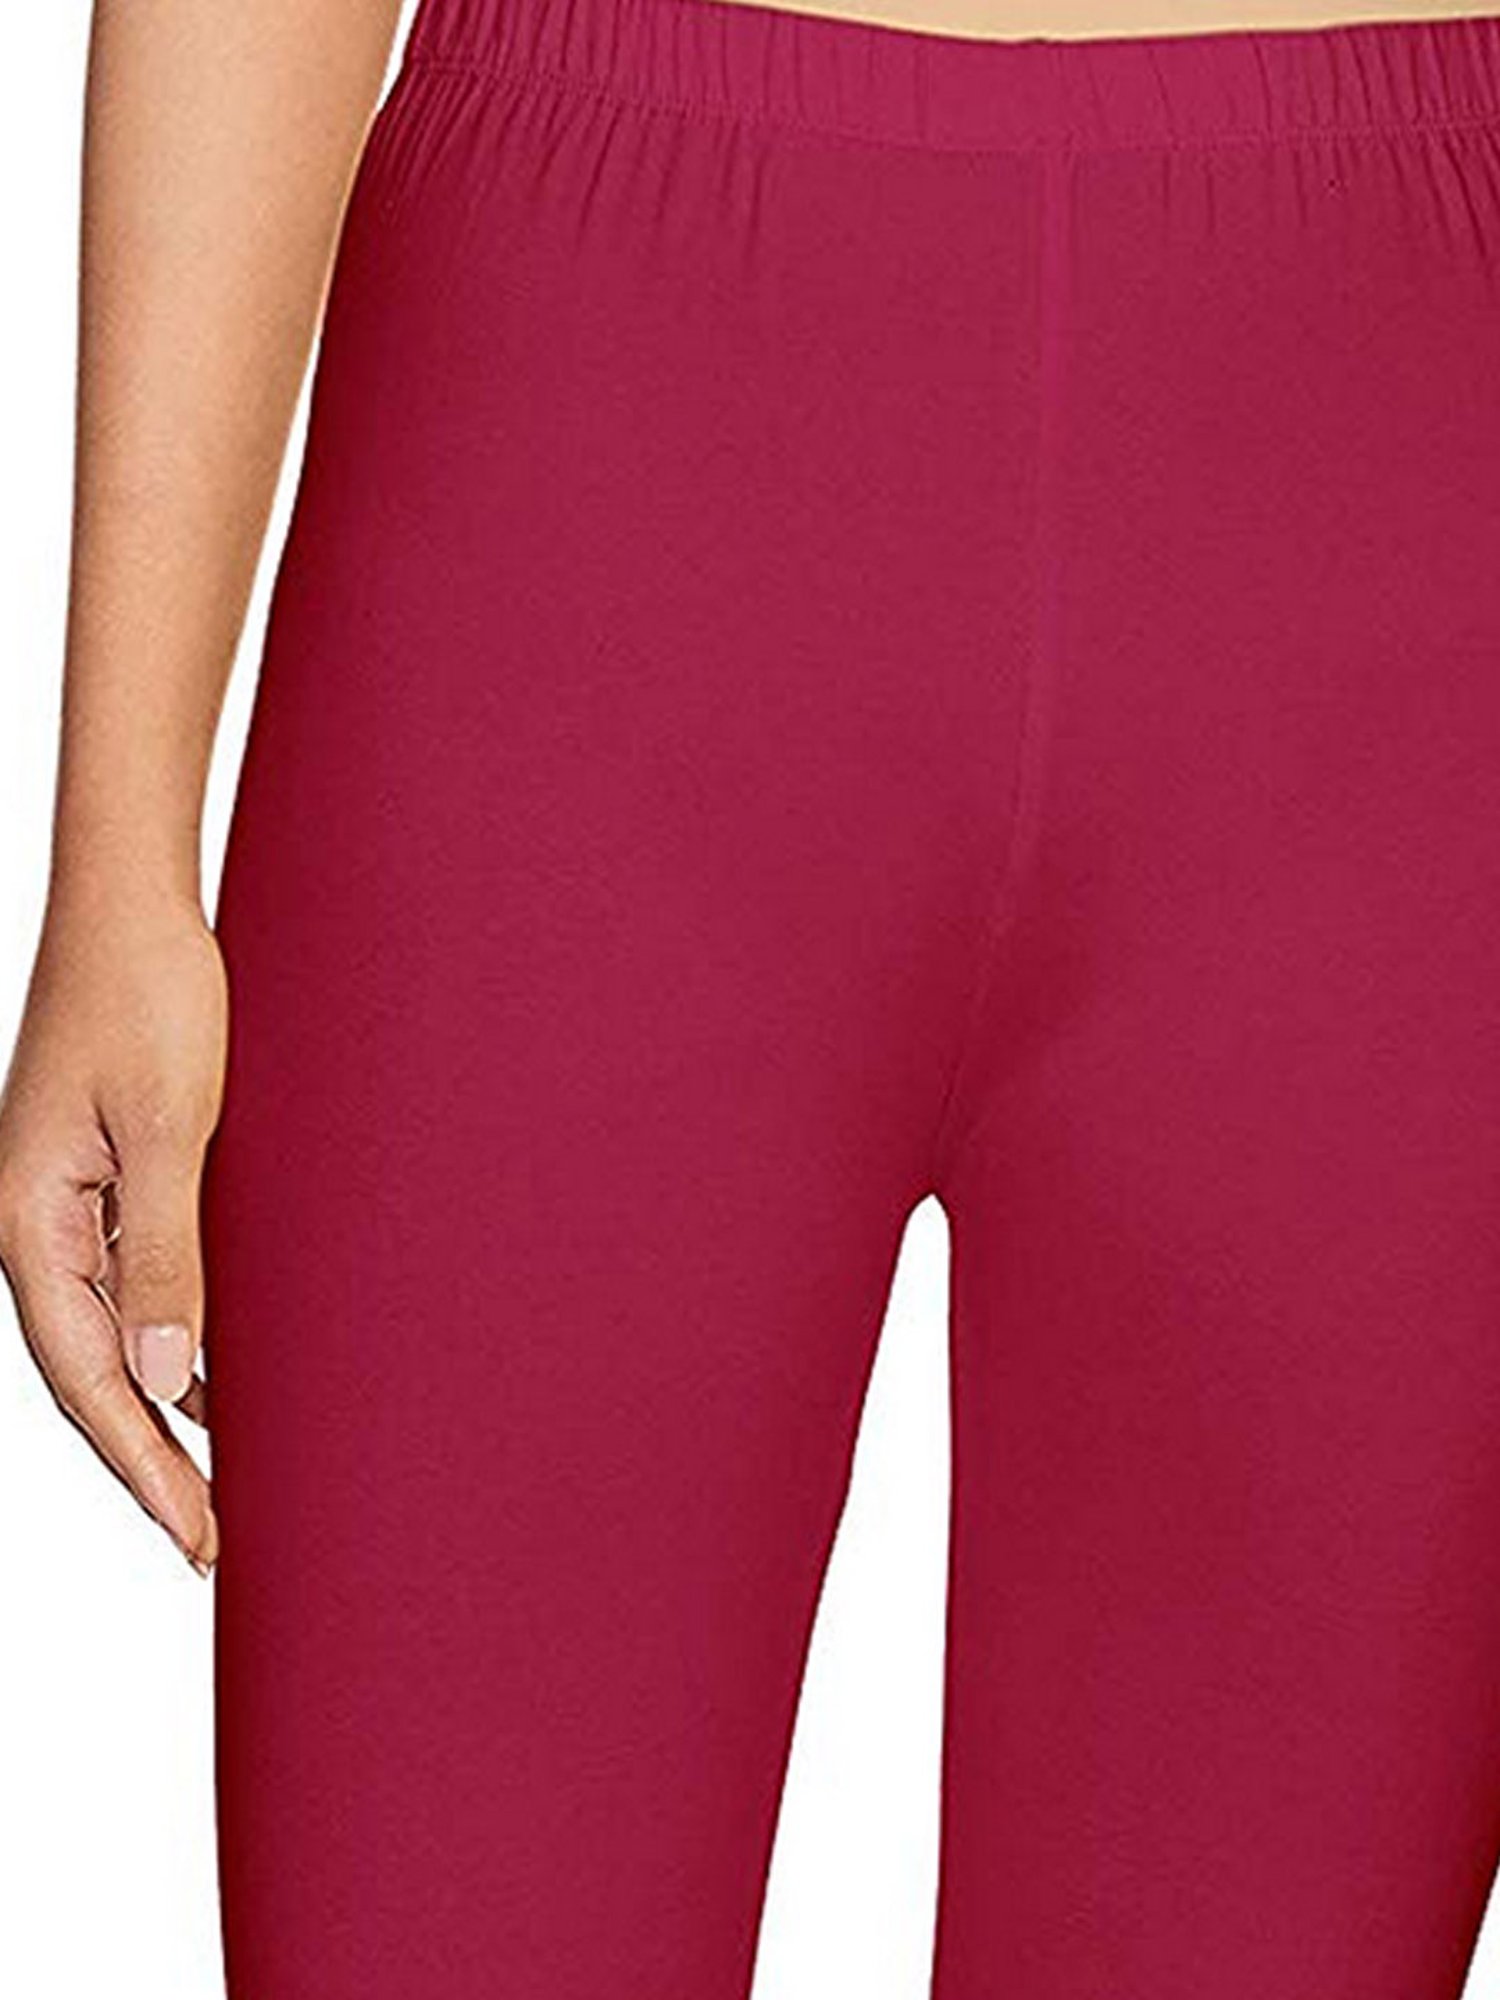 Buy Rupa Softline Scarlet Cotton Leggings for Women Online @ Tata CLiQ